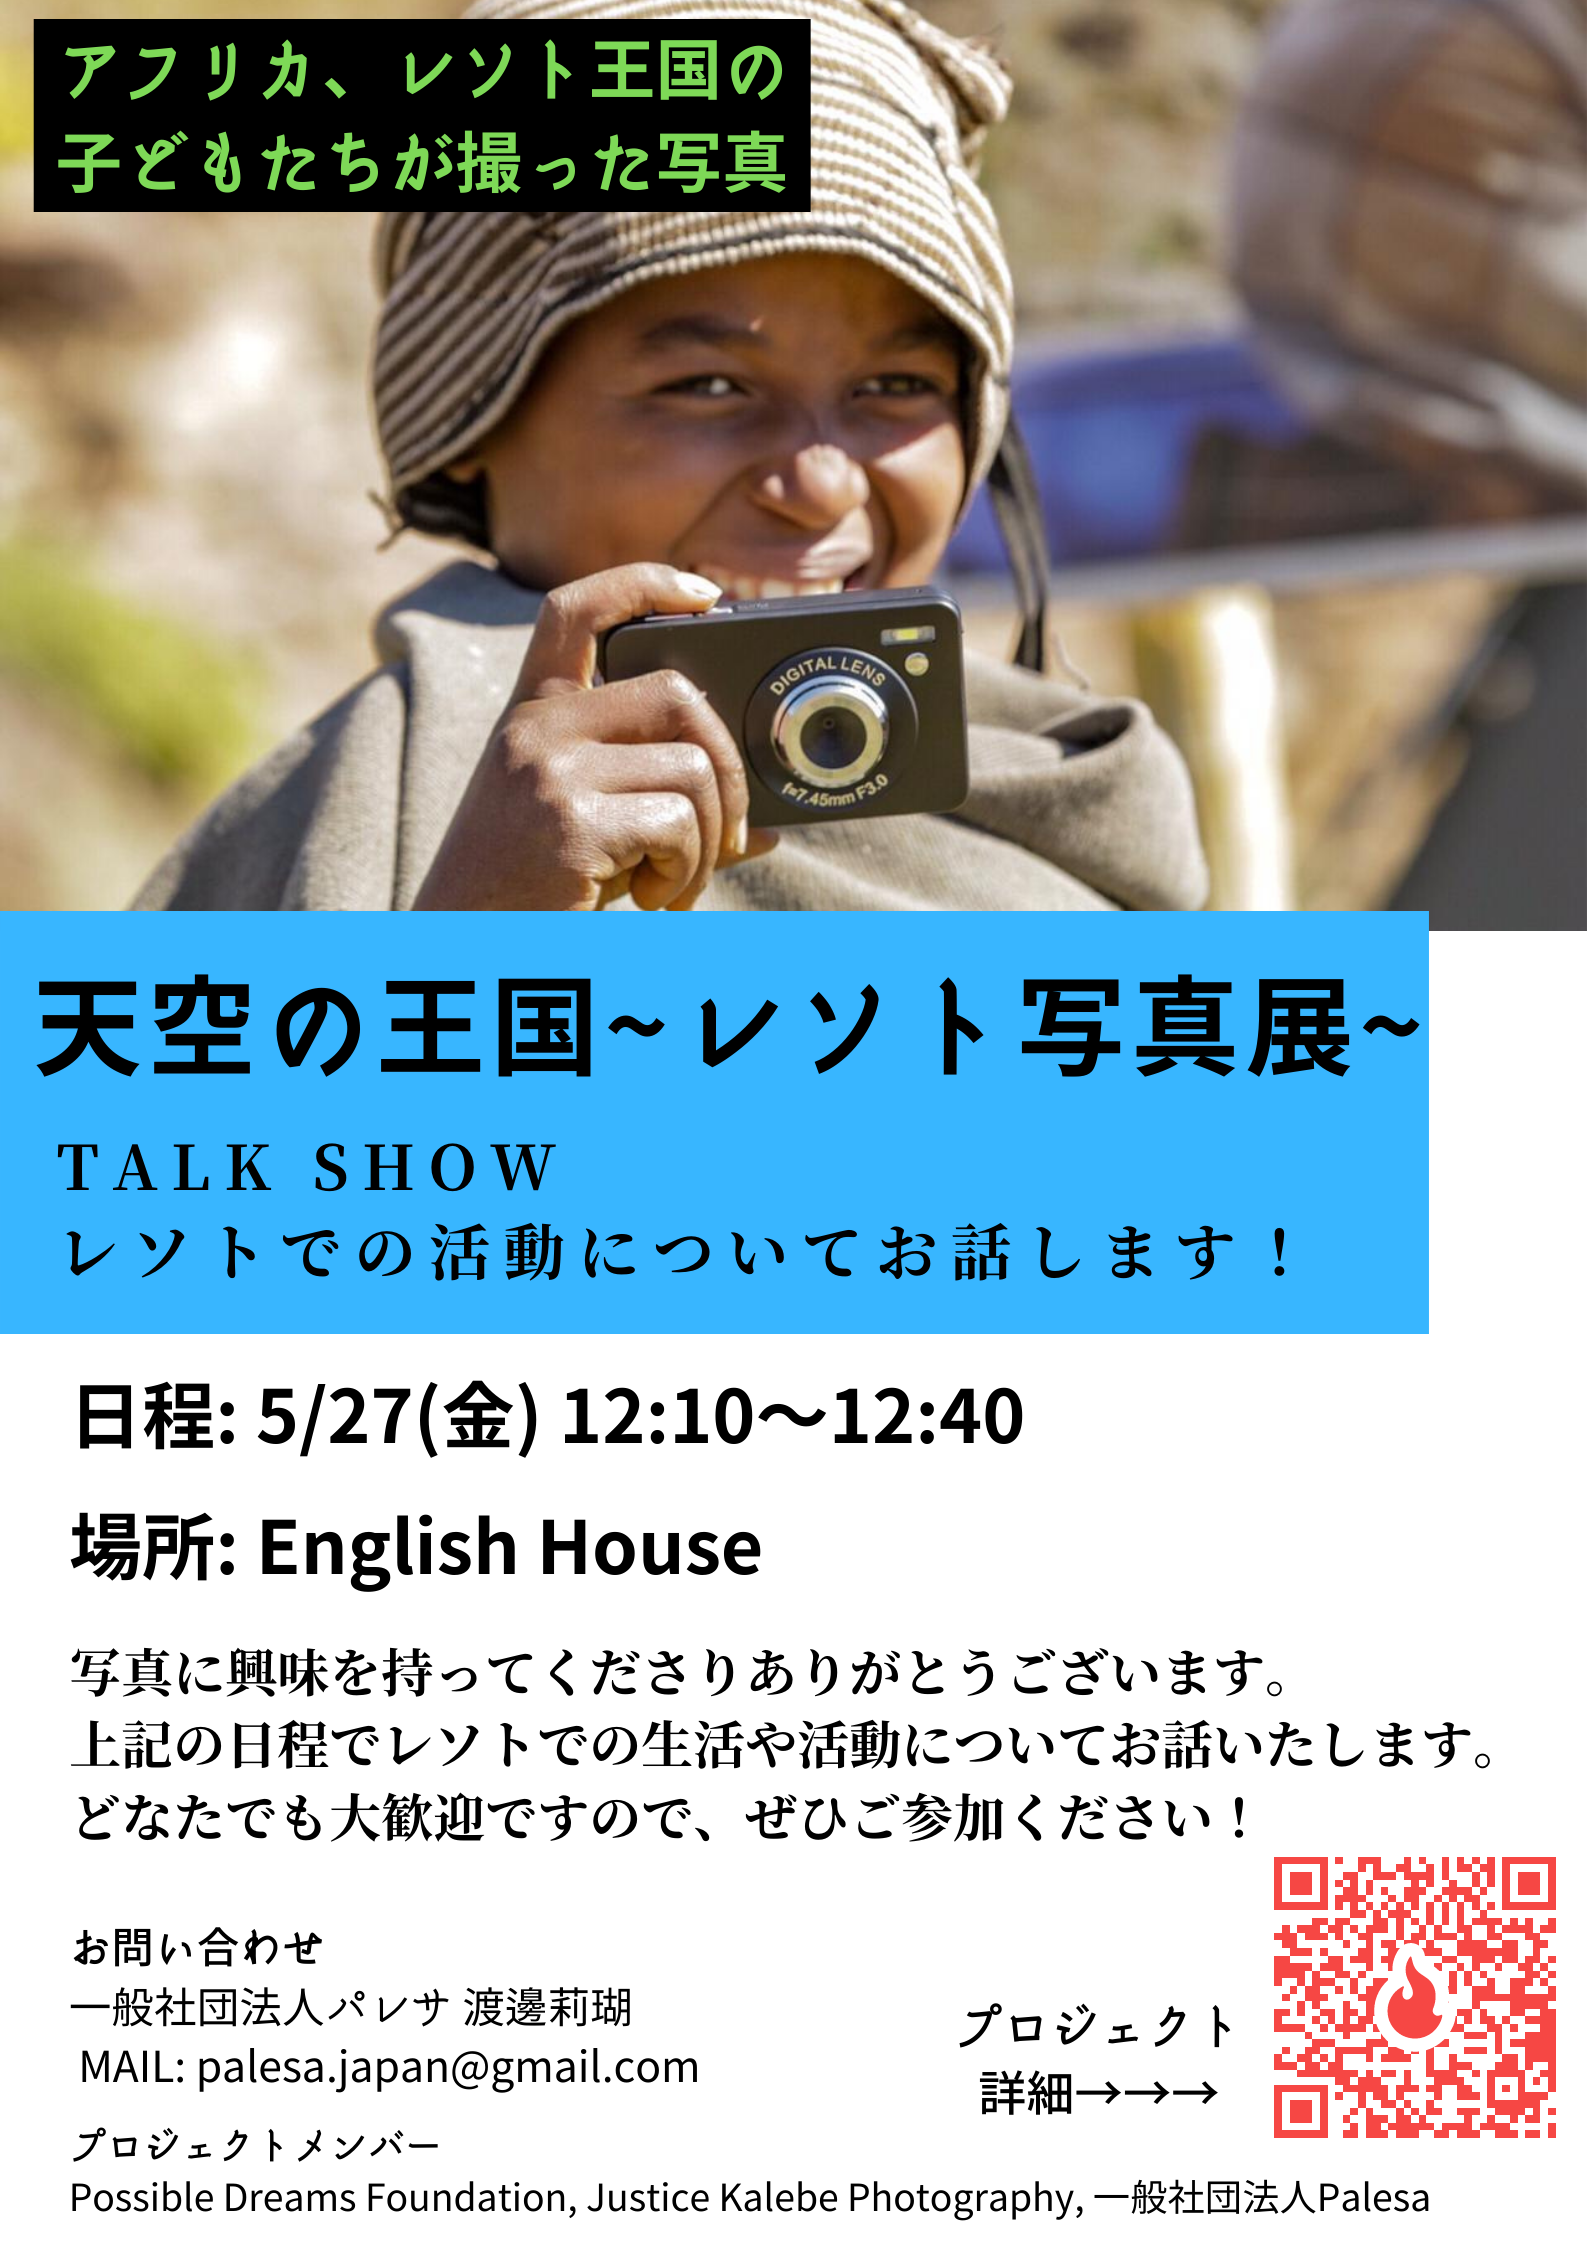 Talk show at EH レソト王国写真展 May 2022.png